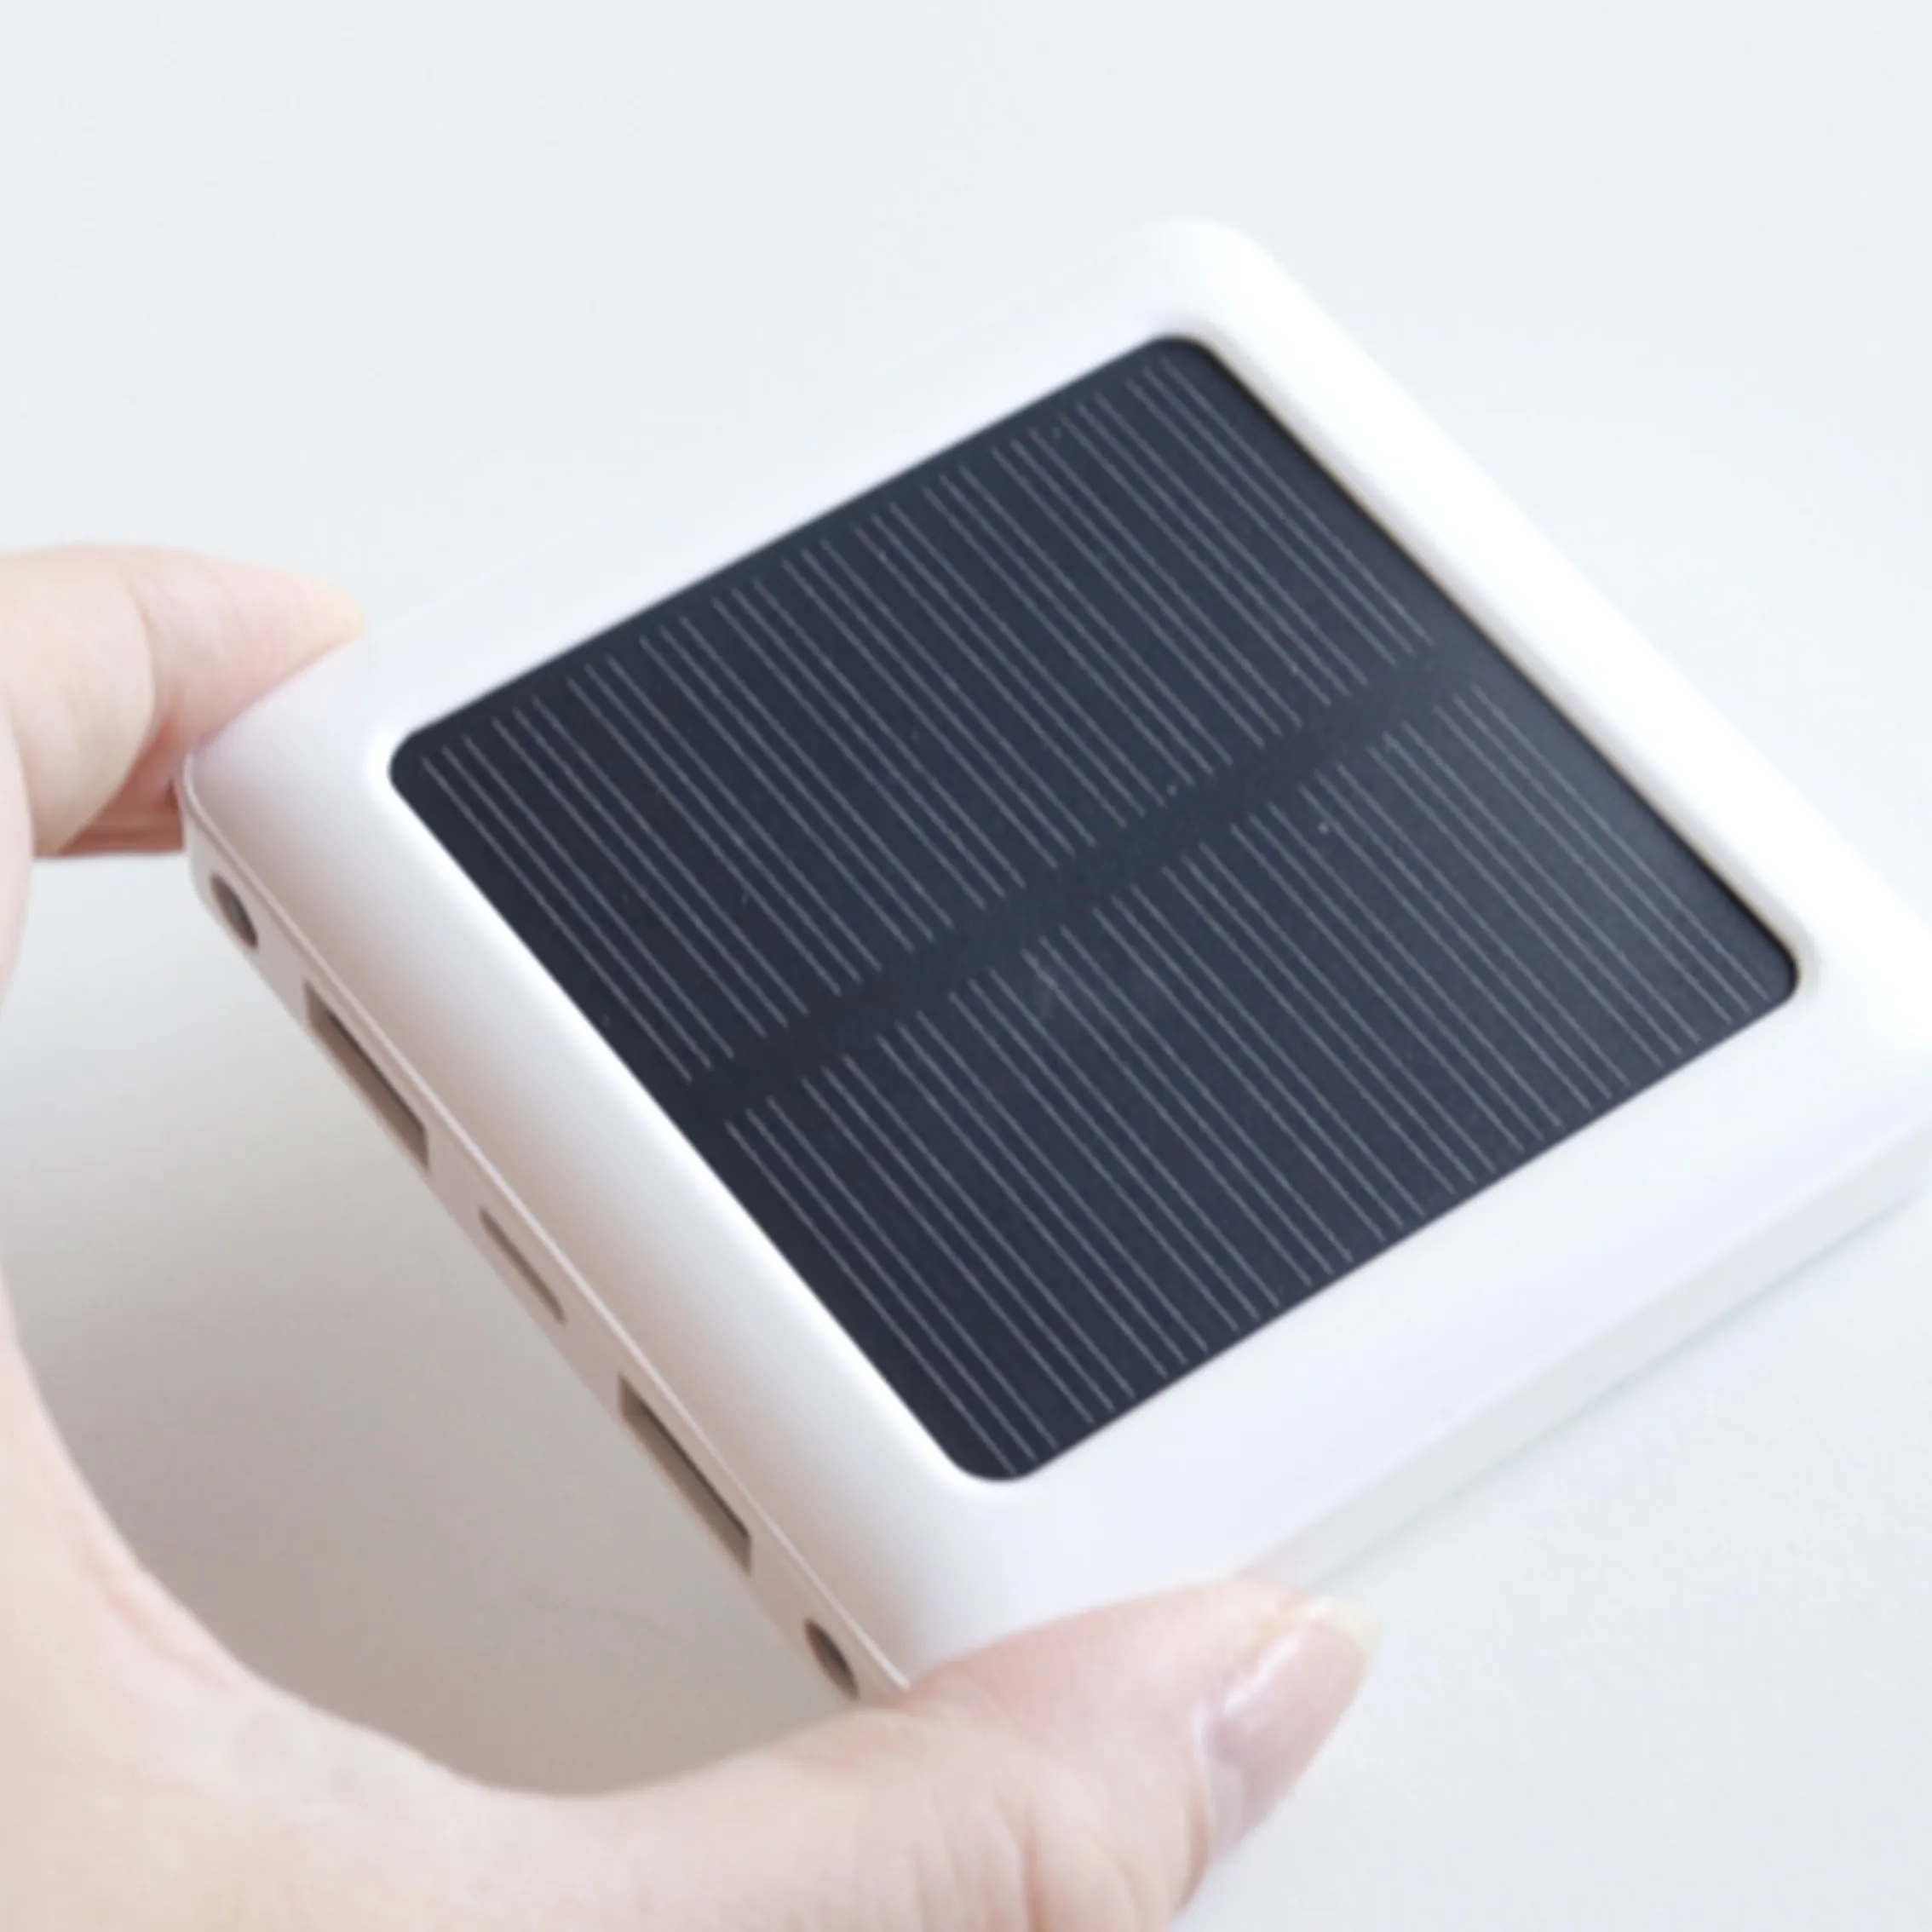 2022 أفضل بيع البسيطة ضئيلة خزان طاقة يعمل بالطاقة الشمسية 5000mAh أفضل ل هدية جيب استخدام